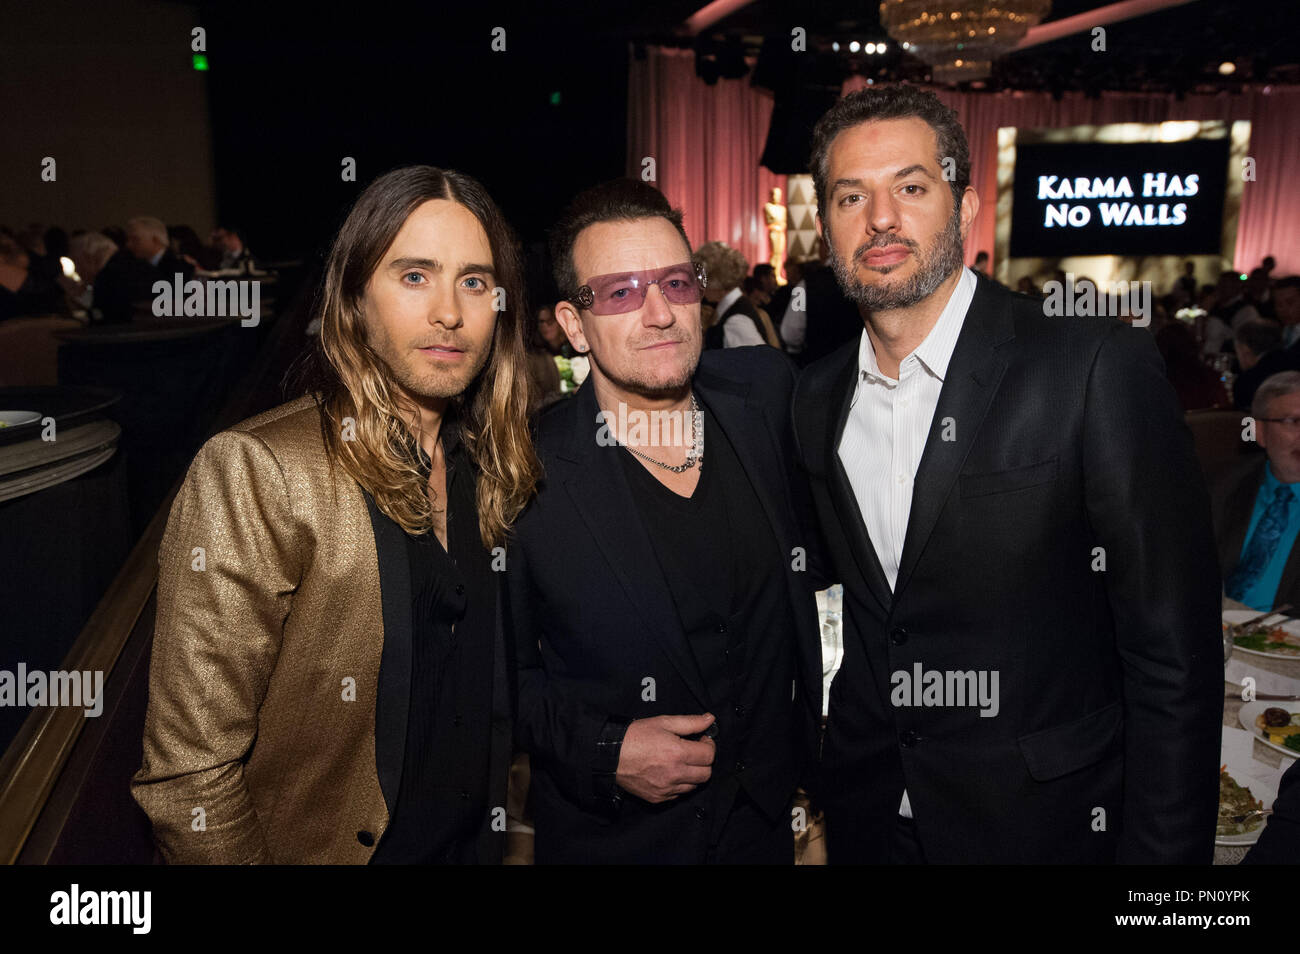 L'acteur Jared Leto (à gauche), chanter/compositeur Bono (centre) et producteur Guy Oseary à l'Oscar® nominés Déjeuner à Beverly Hills Lundi, 10 février 2014. Référence de fichier #  32256 003 pour un usage éditorial uniquement - Tous droits réservés Banque D'Images